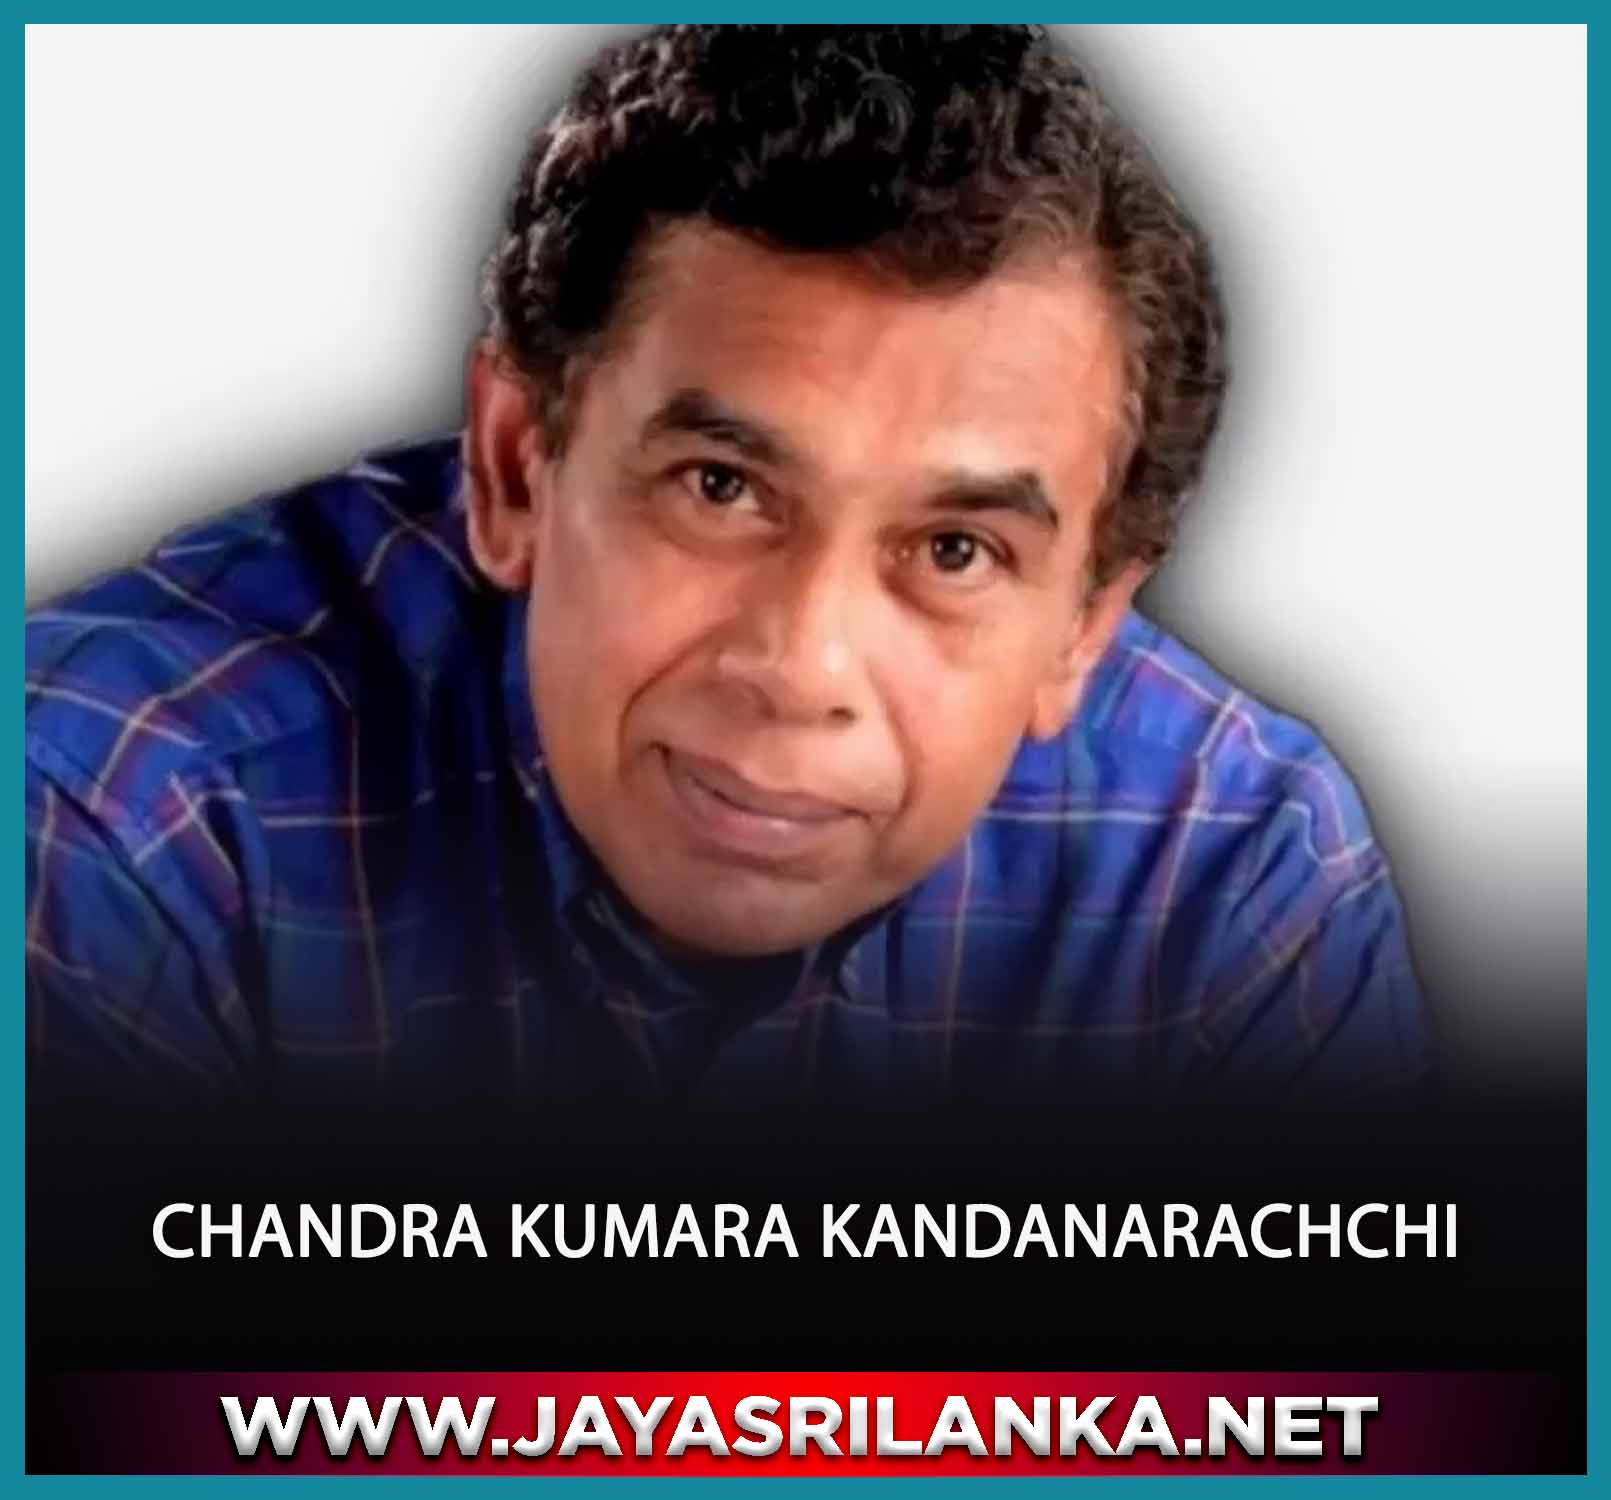 Dedahas Wasarai - Chandra Kumara Kandanarachchi mp3 Image